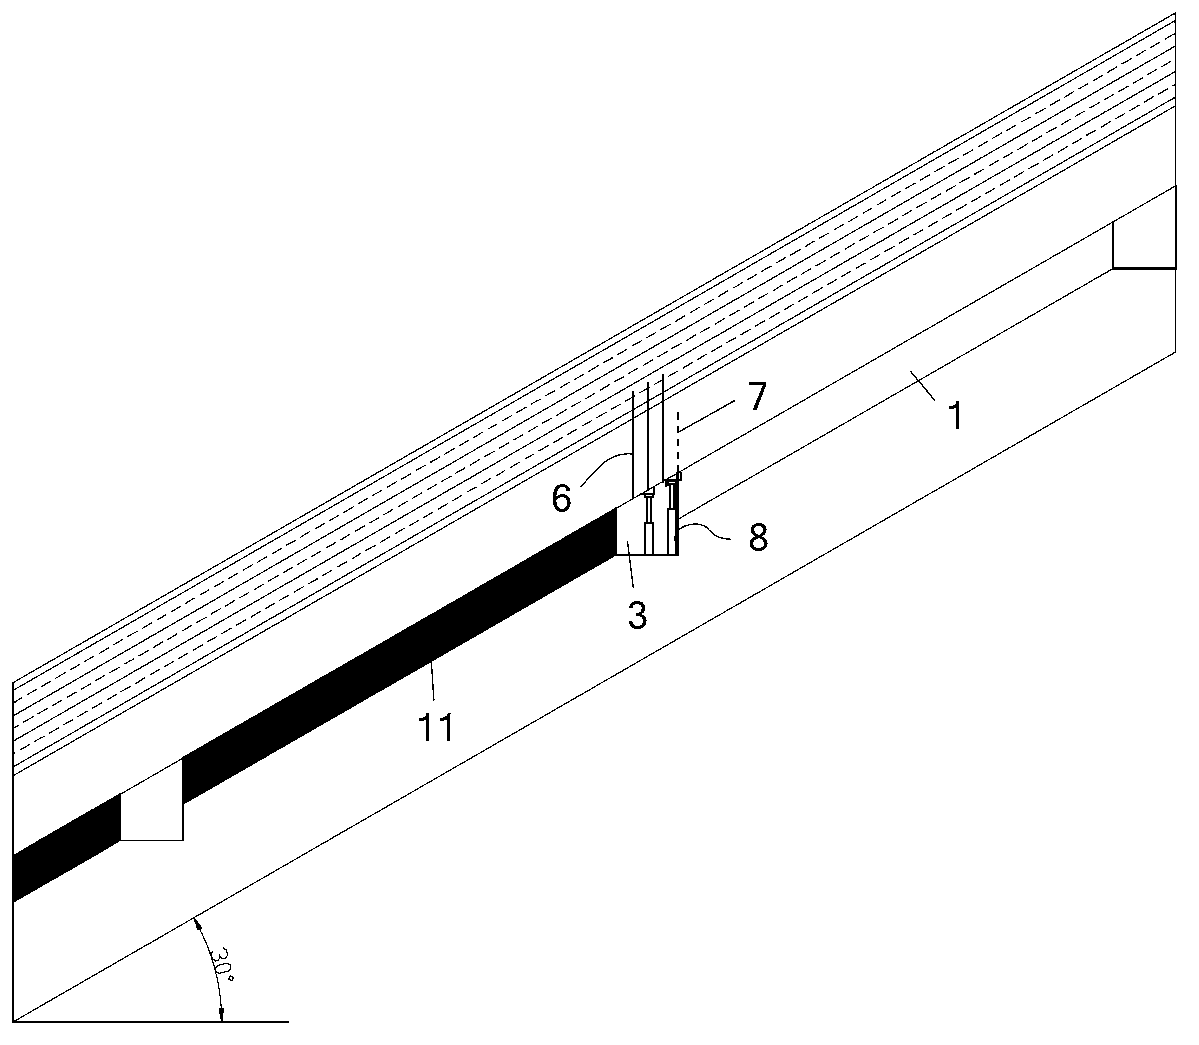 Steep-coal-seam long wall face non-pillar coal mining method